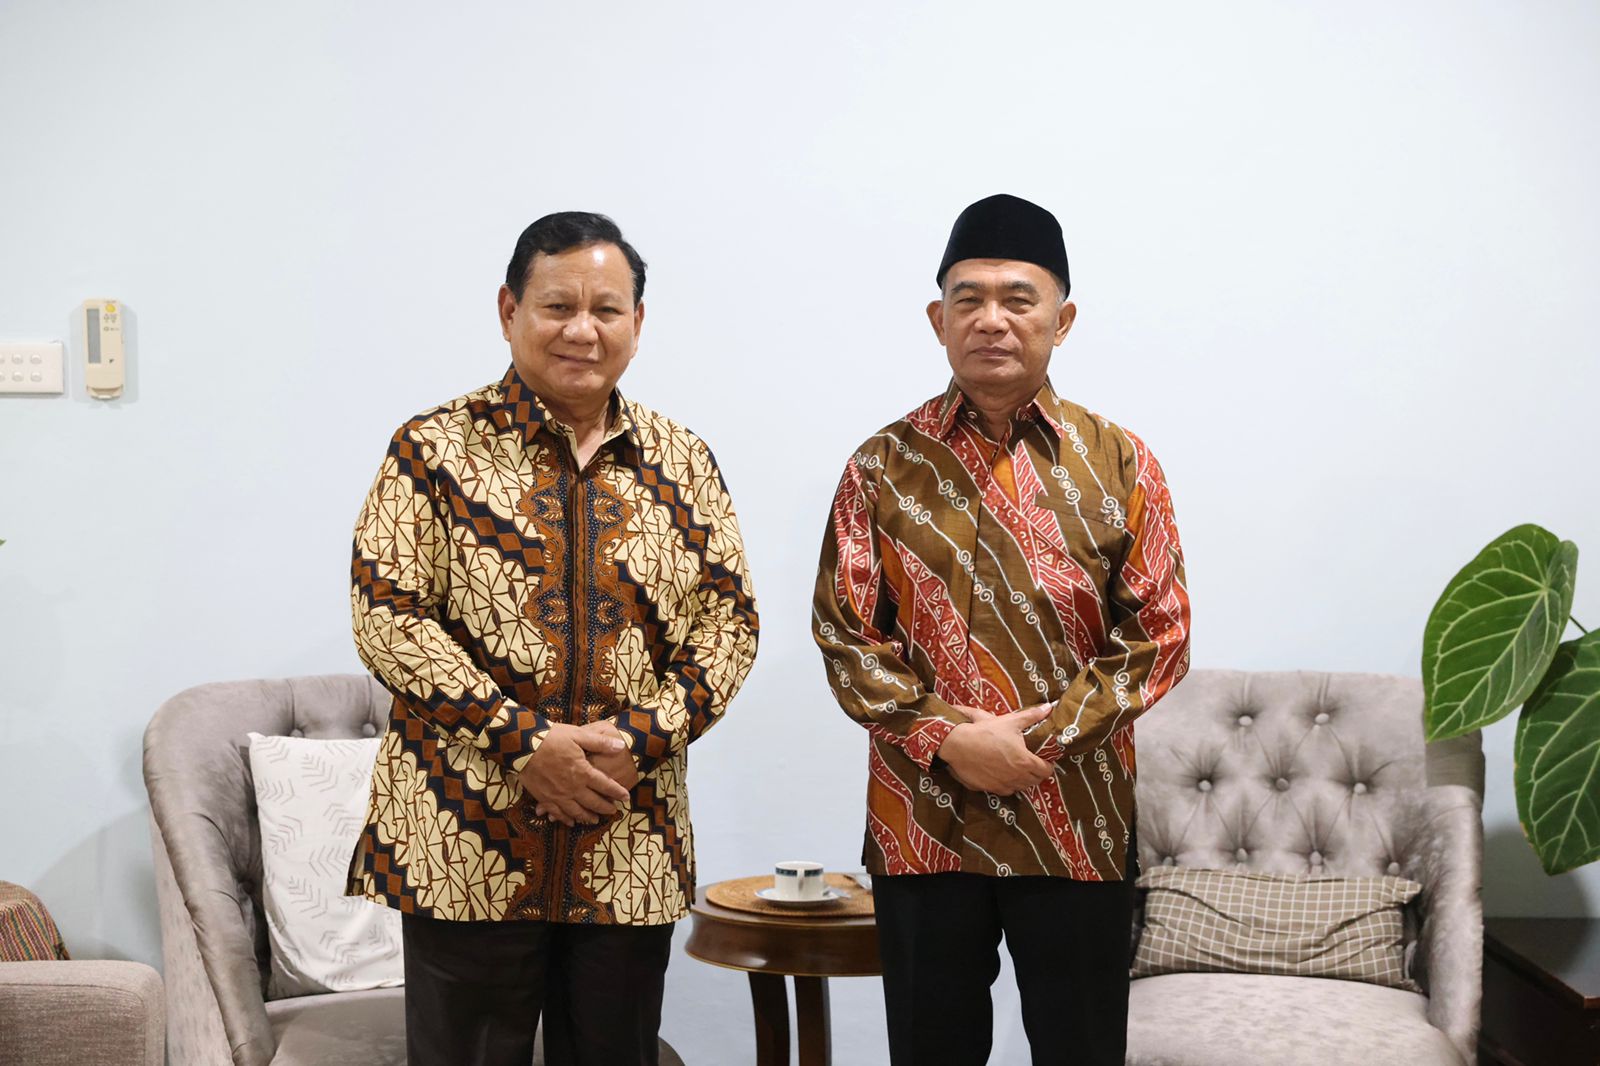 Silaturahmi Lebaran, Prabowo Sambangi Muhadjir Effendy dan Undang ke Hambalang